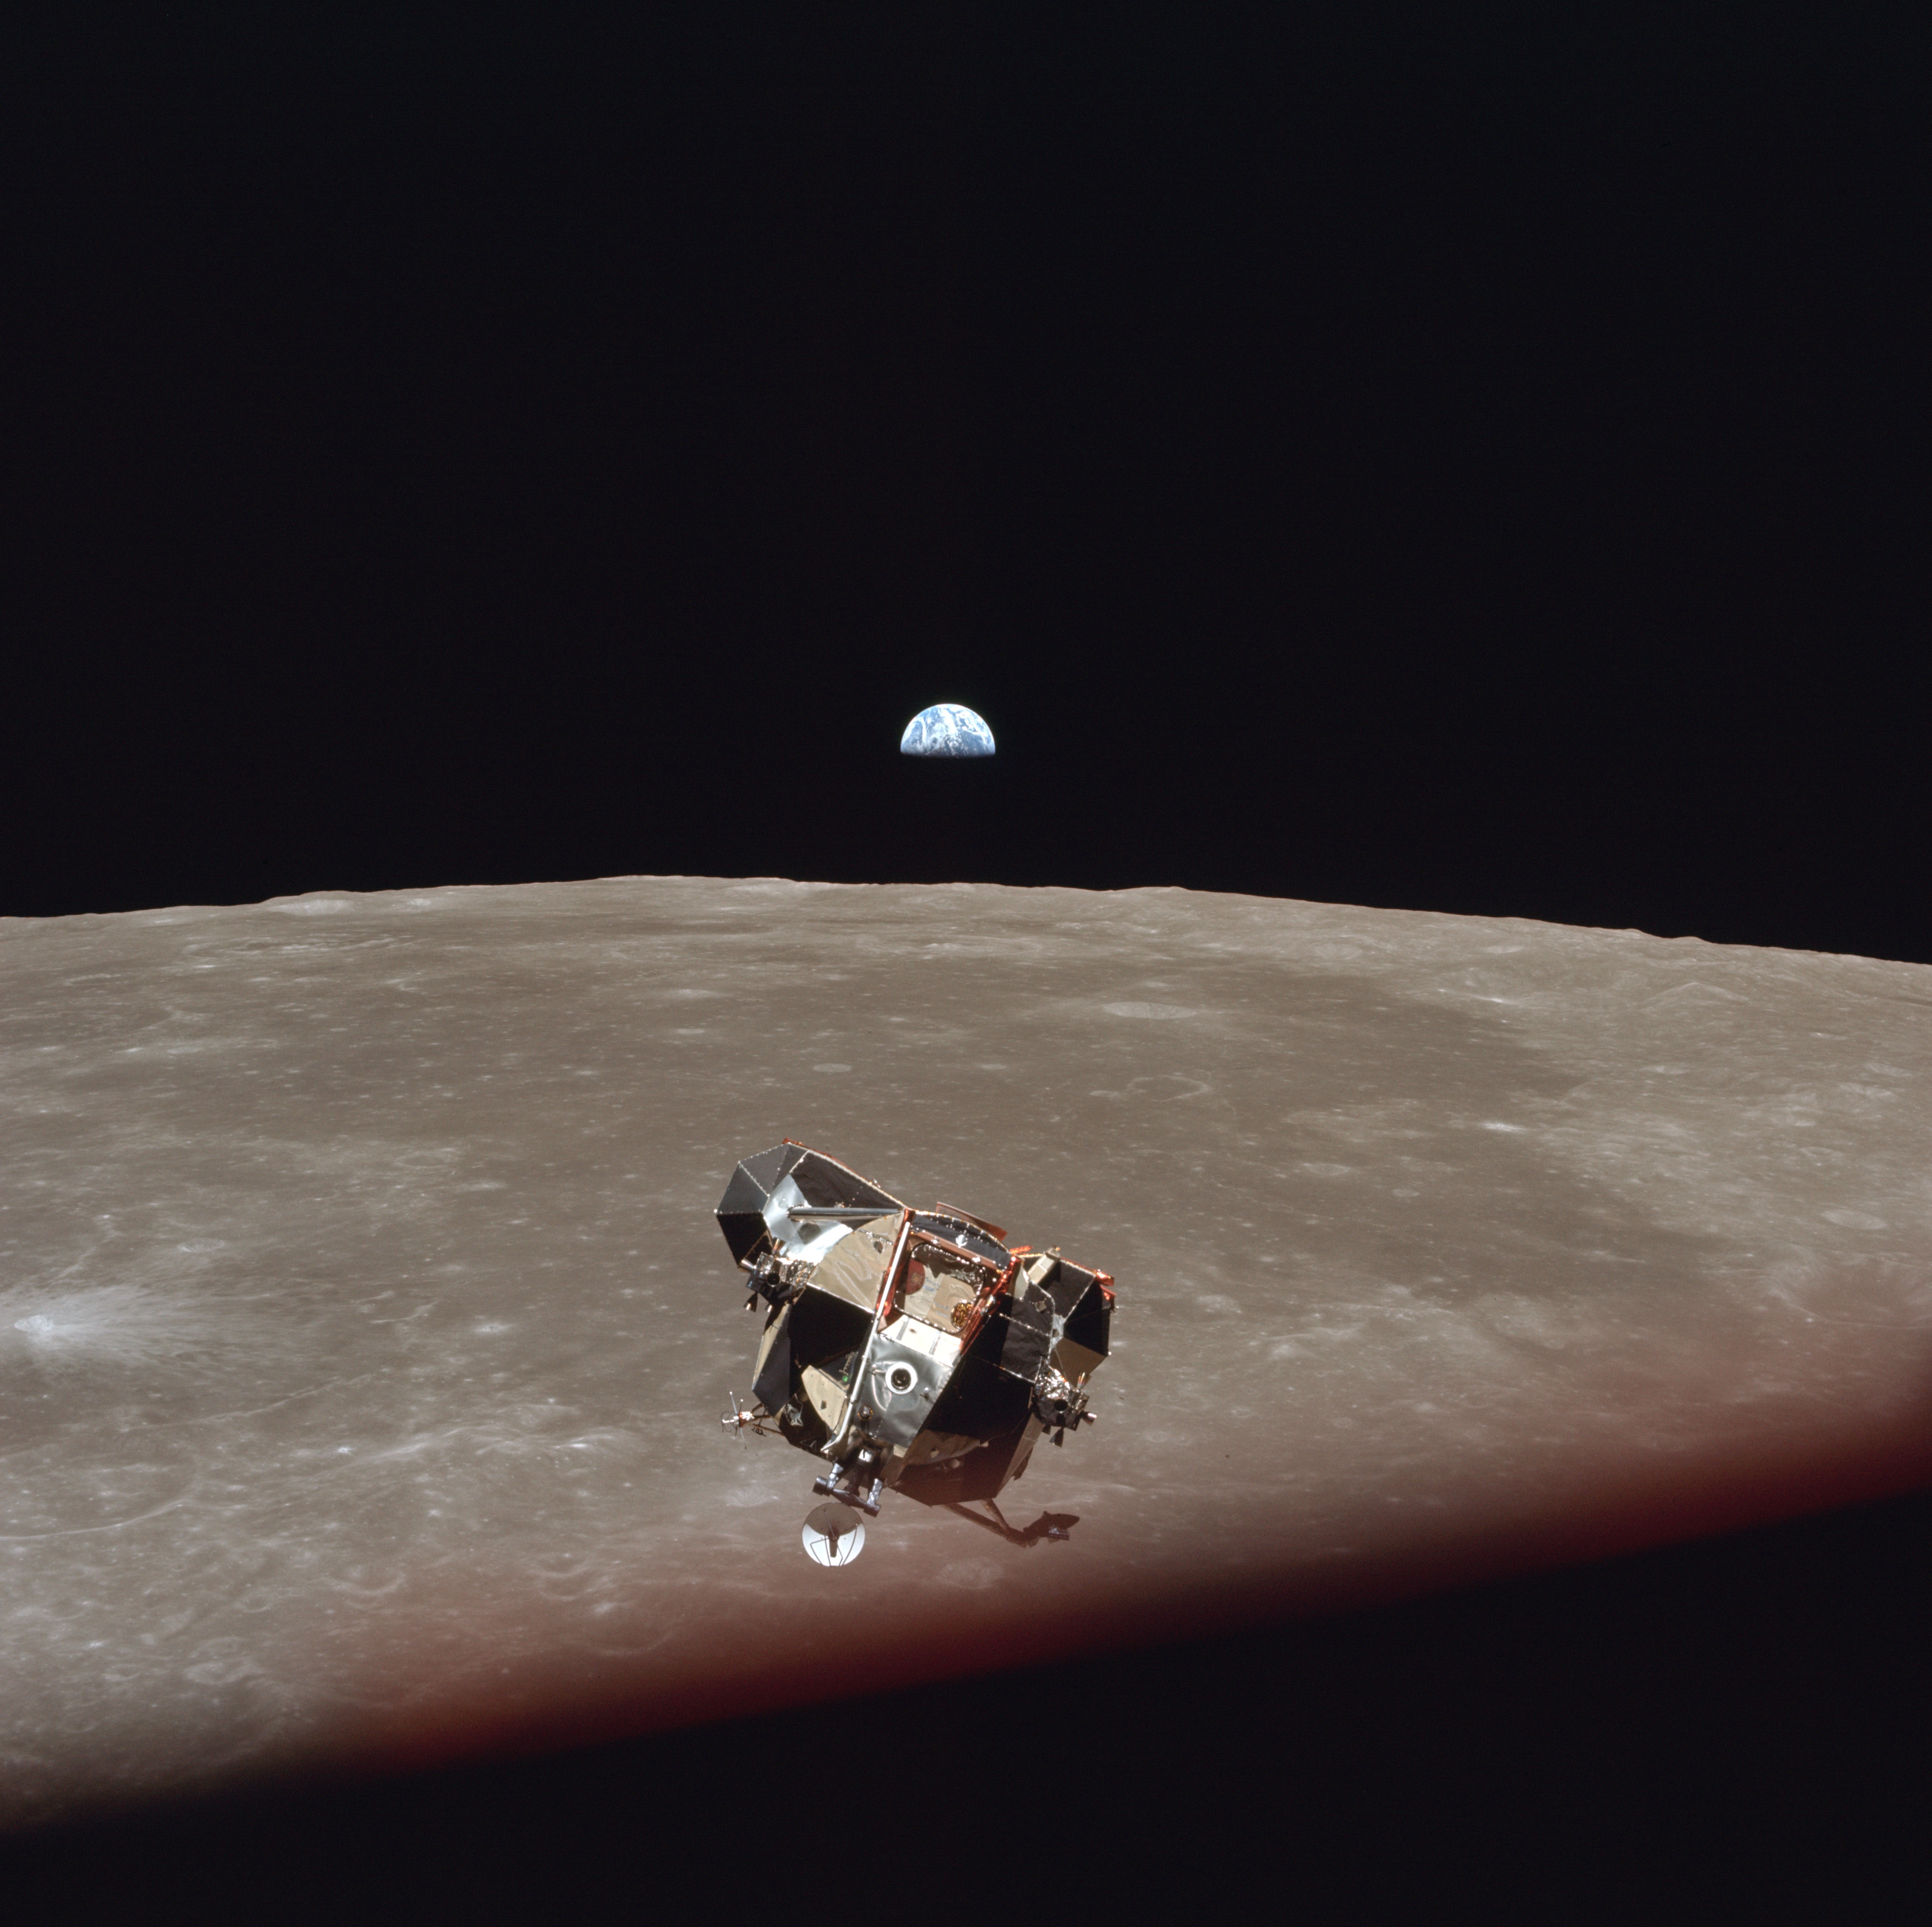 Il lander lunare dell'Apollo 11 "Eagle", che trasporta Neil Armstrong e Buzz Aldrin dopo la discesa sulla luna, di ritorno al modulo di comando Columbia dove li attende Michael Collins